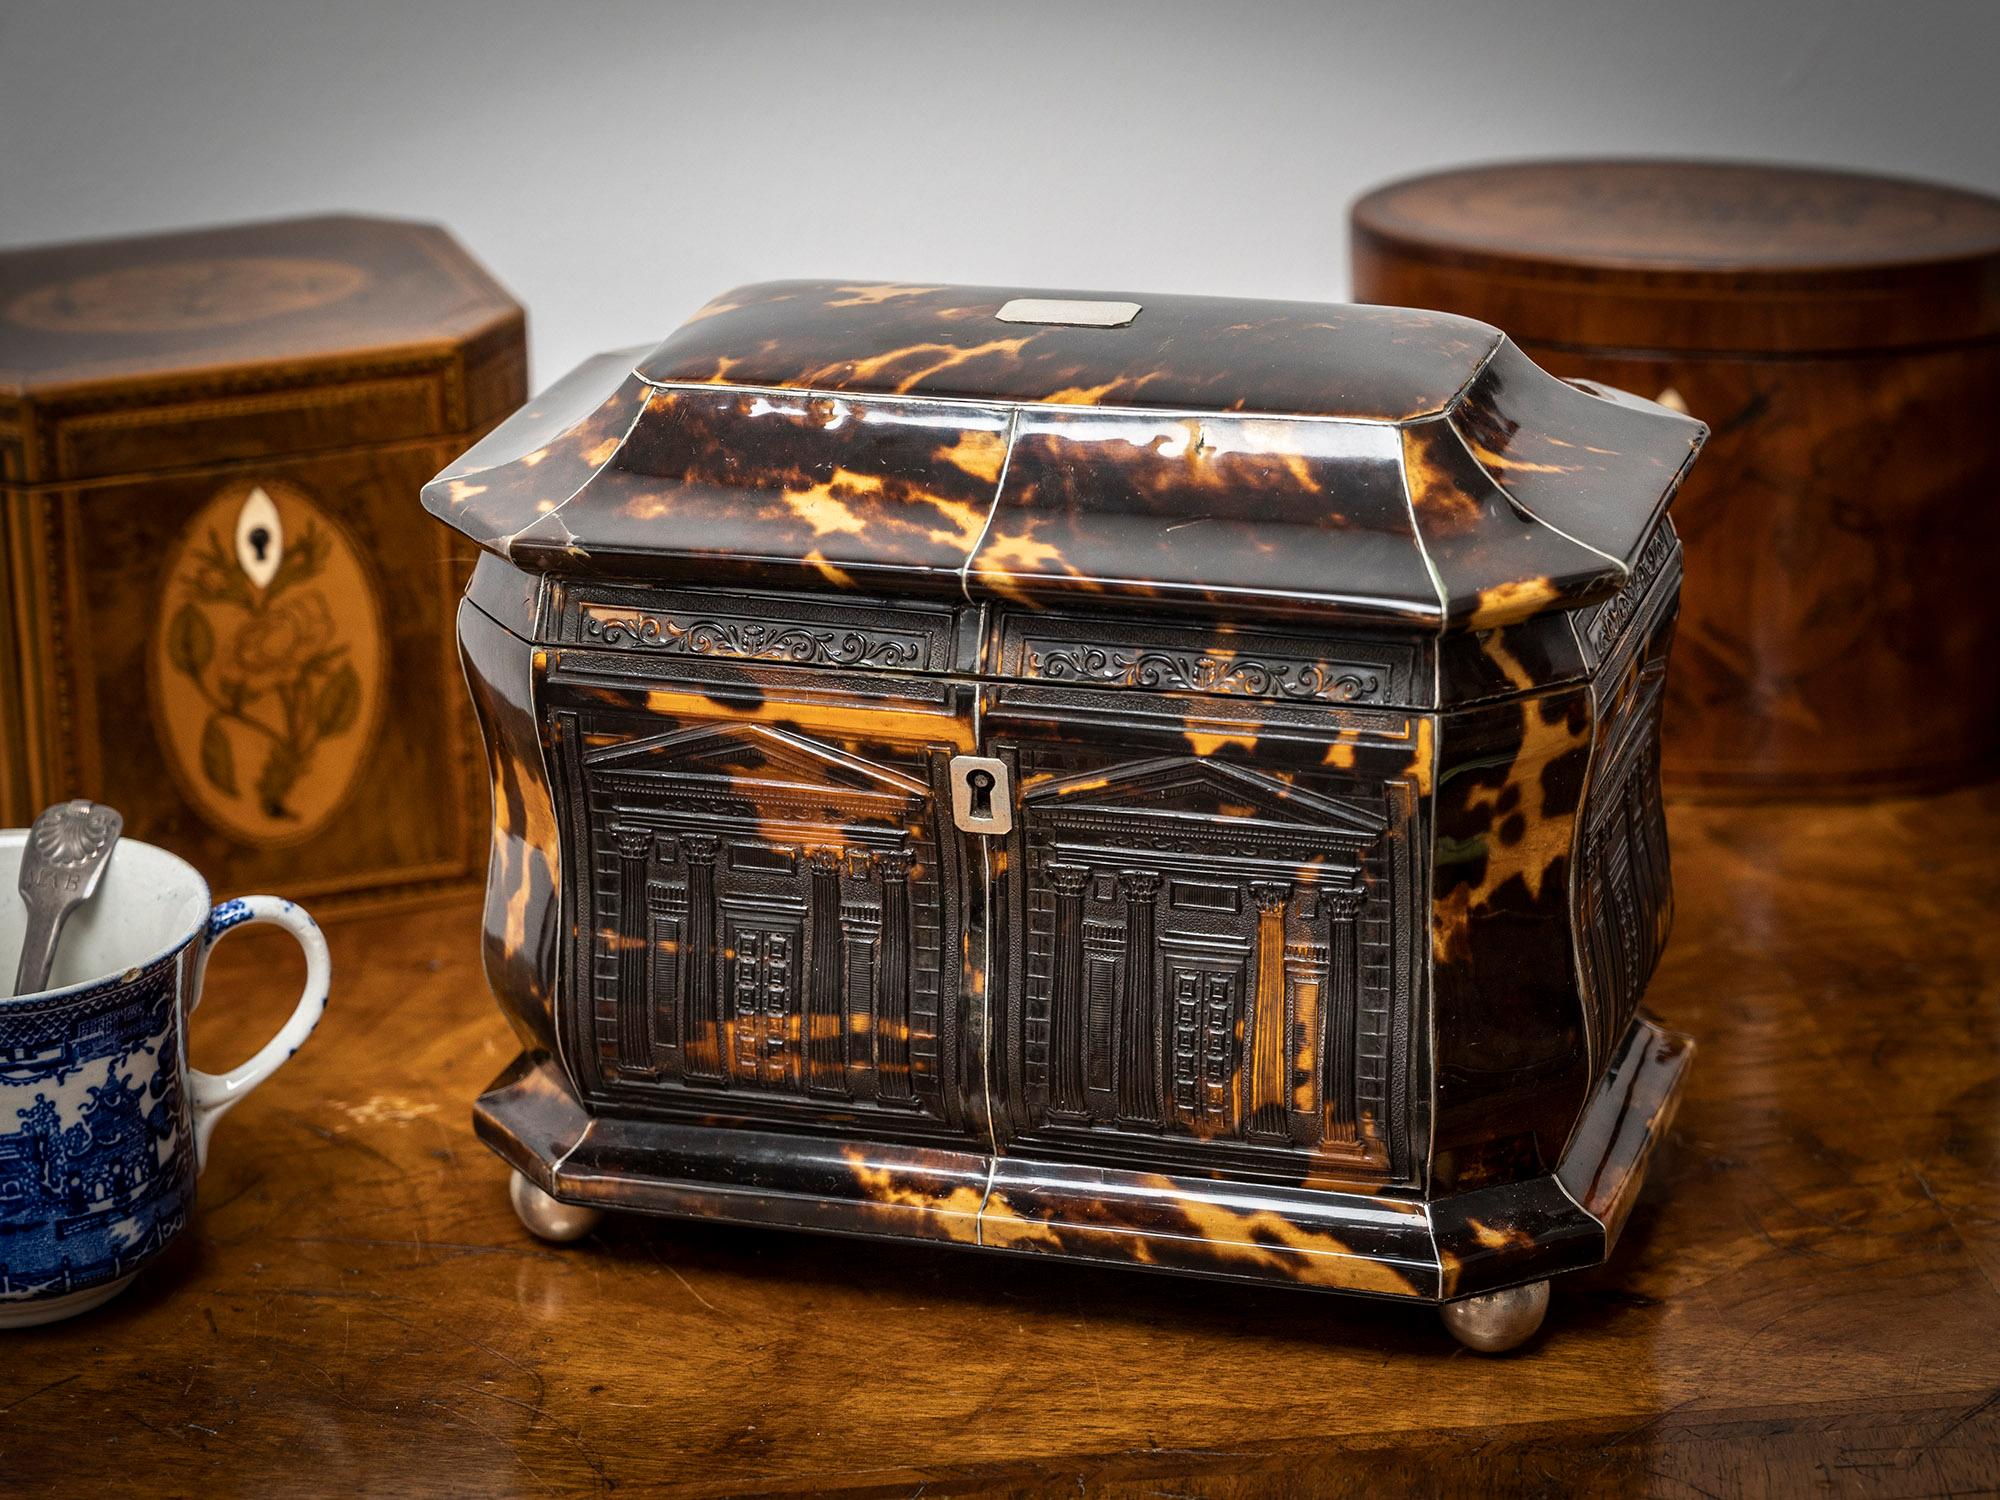 Design/One en écaille de tortue pressée

Dans notre collection de boîtes à thé, nous avons le plaisir de vous proposer cette boîte à thé en écaille de tortue de l'architecture Regency. La boîte à thé est de forme bombée, avec une base évasée, des